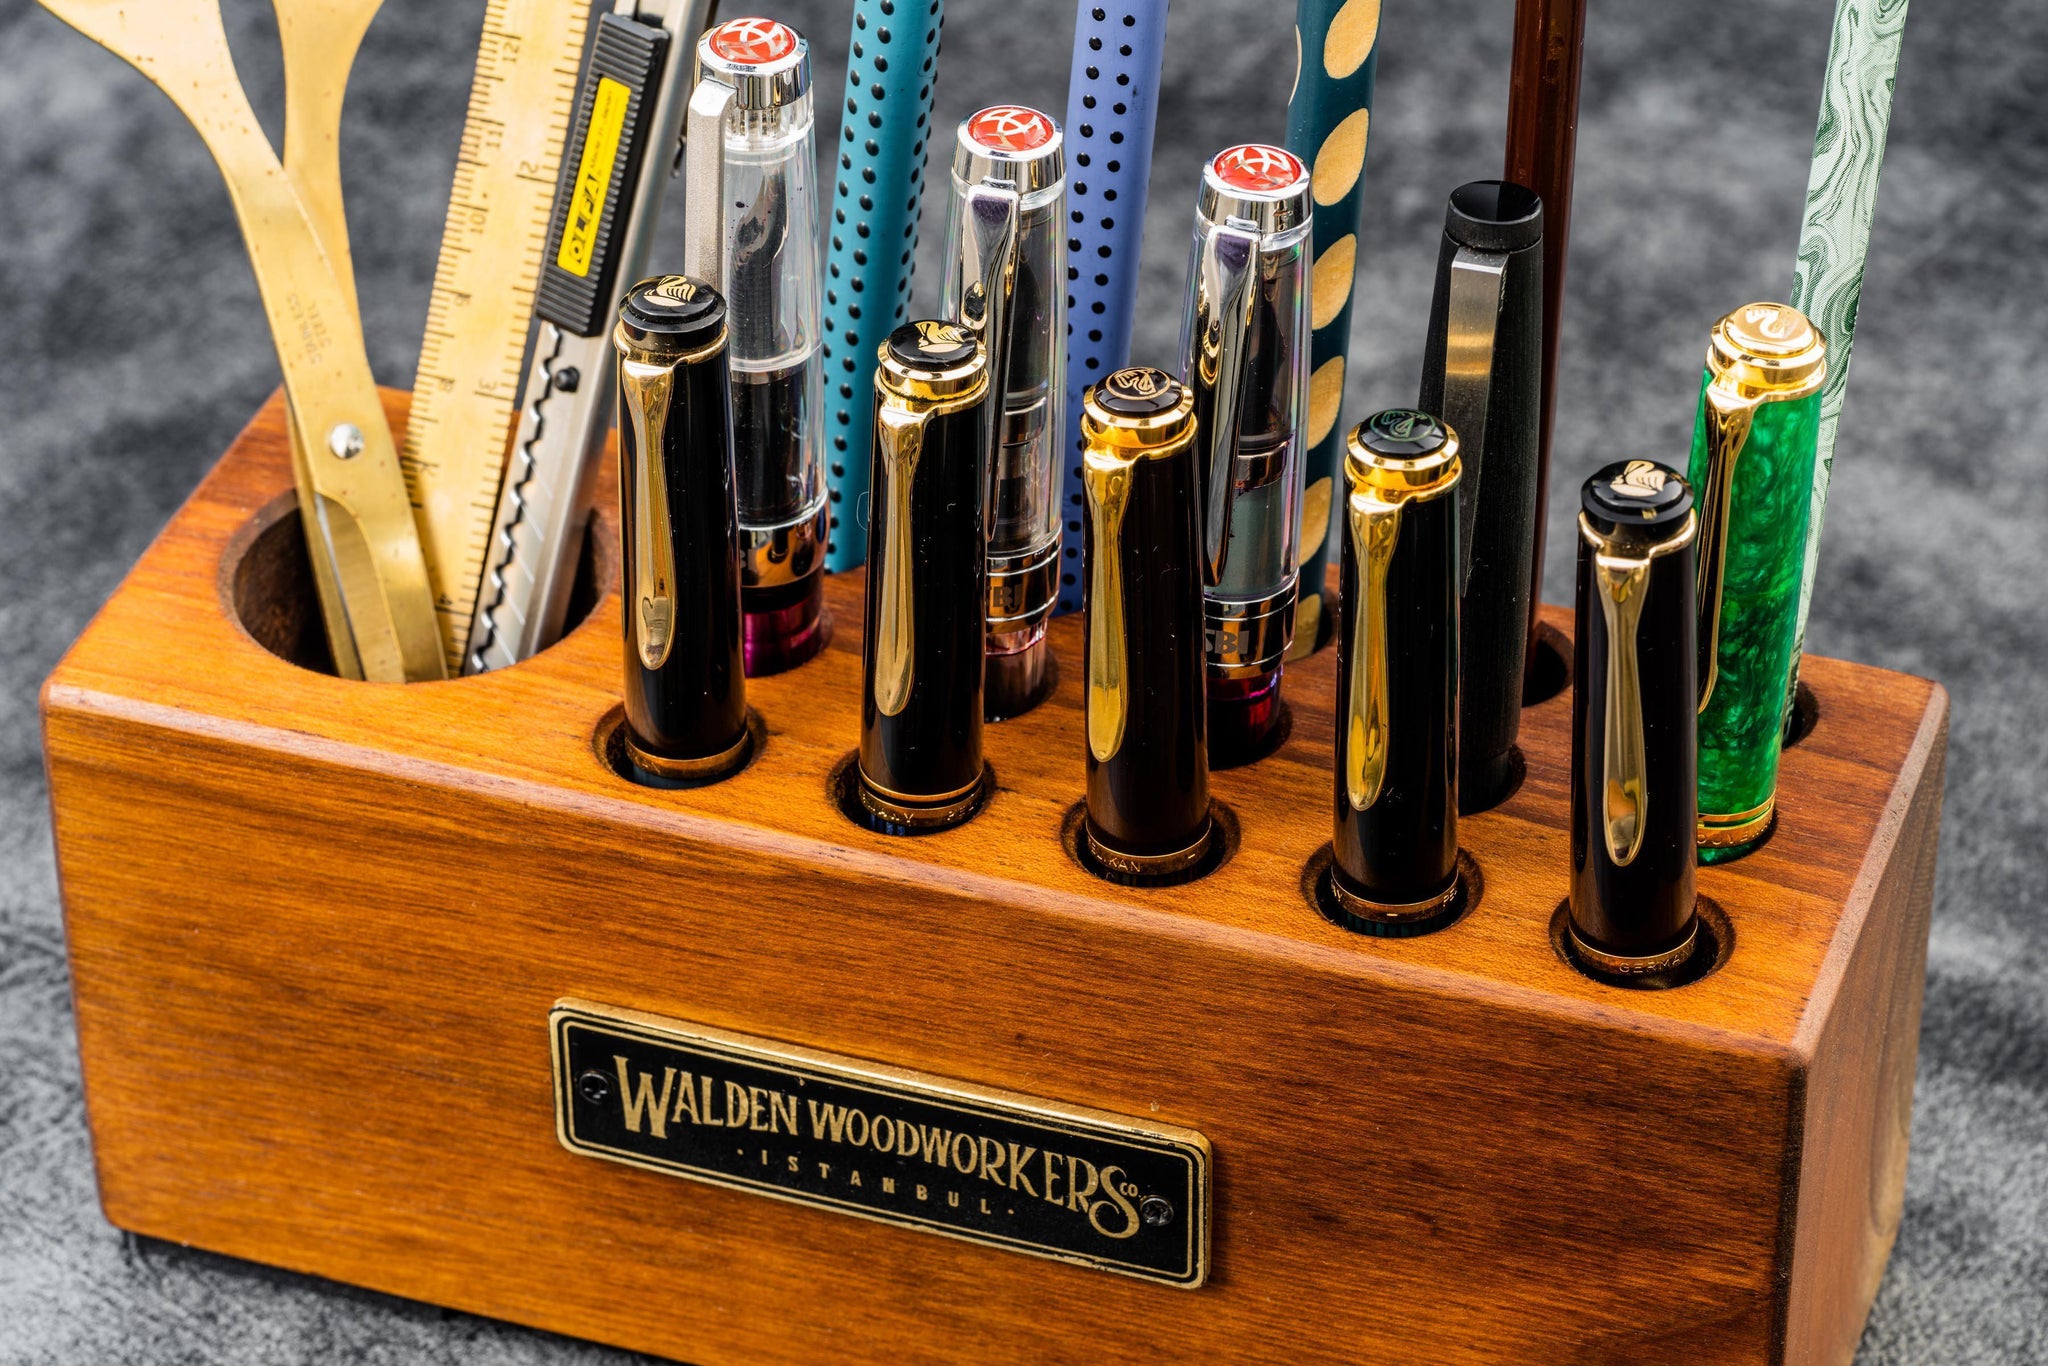 Wood Desk Organizer - Pen & Tool Holder - Walnut or Mahogany